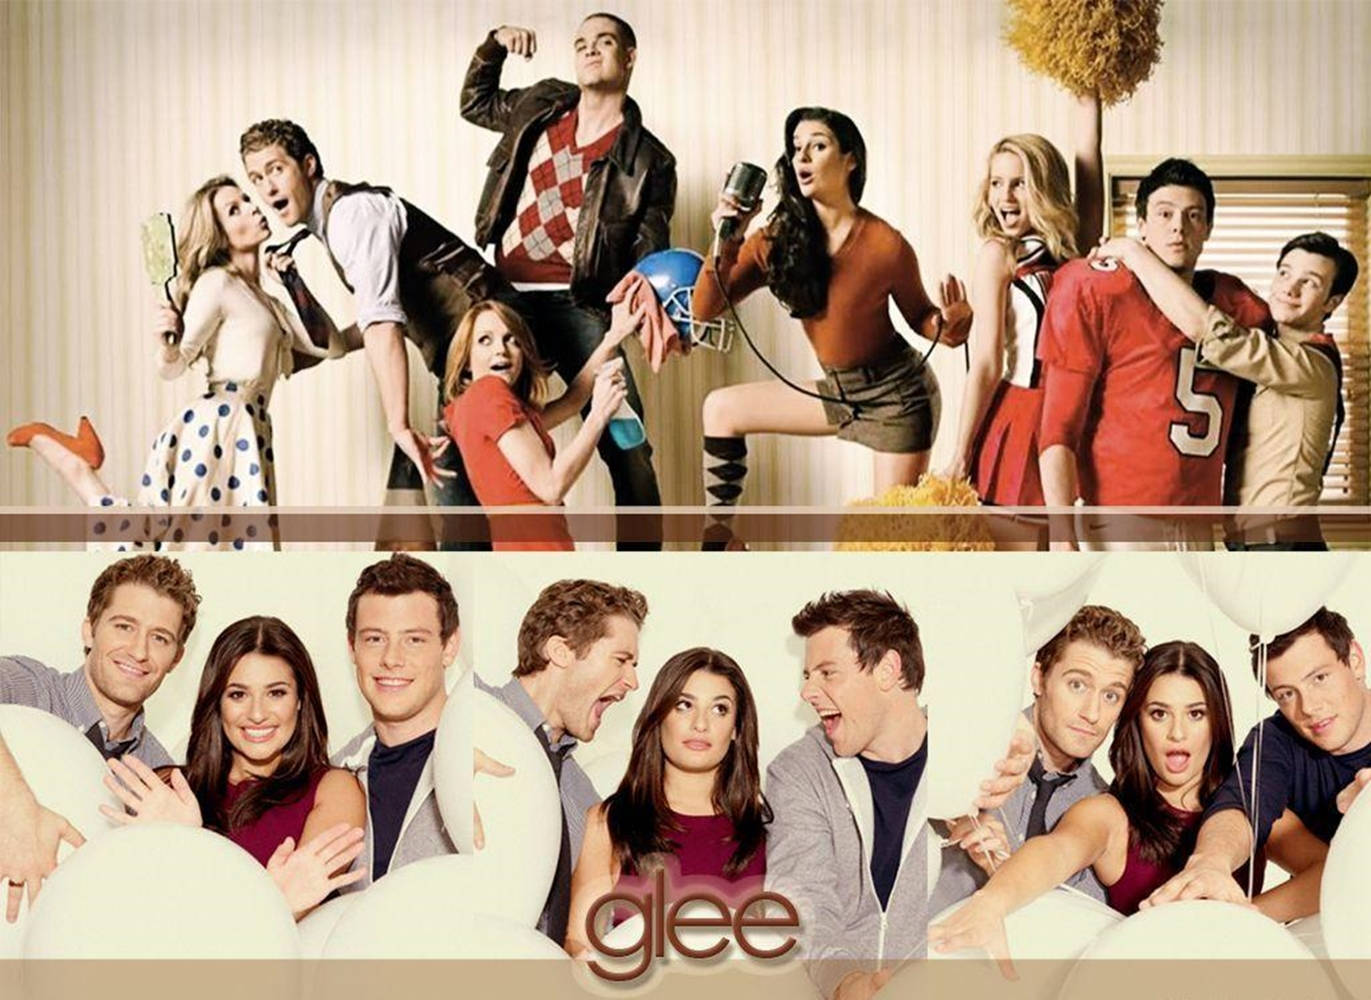 Glee Cast Members Poster Design Wallpaper